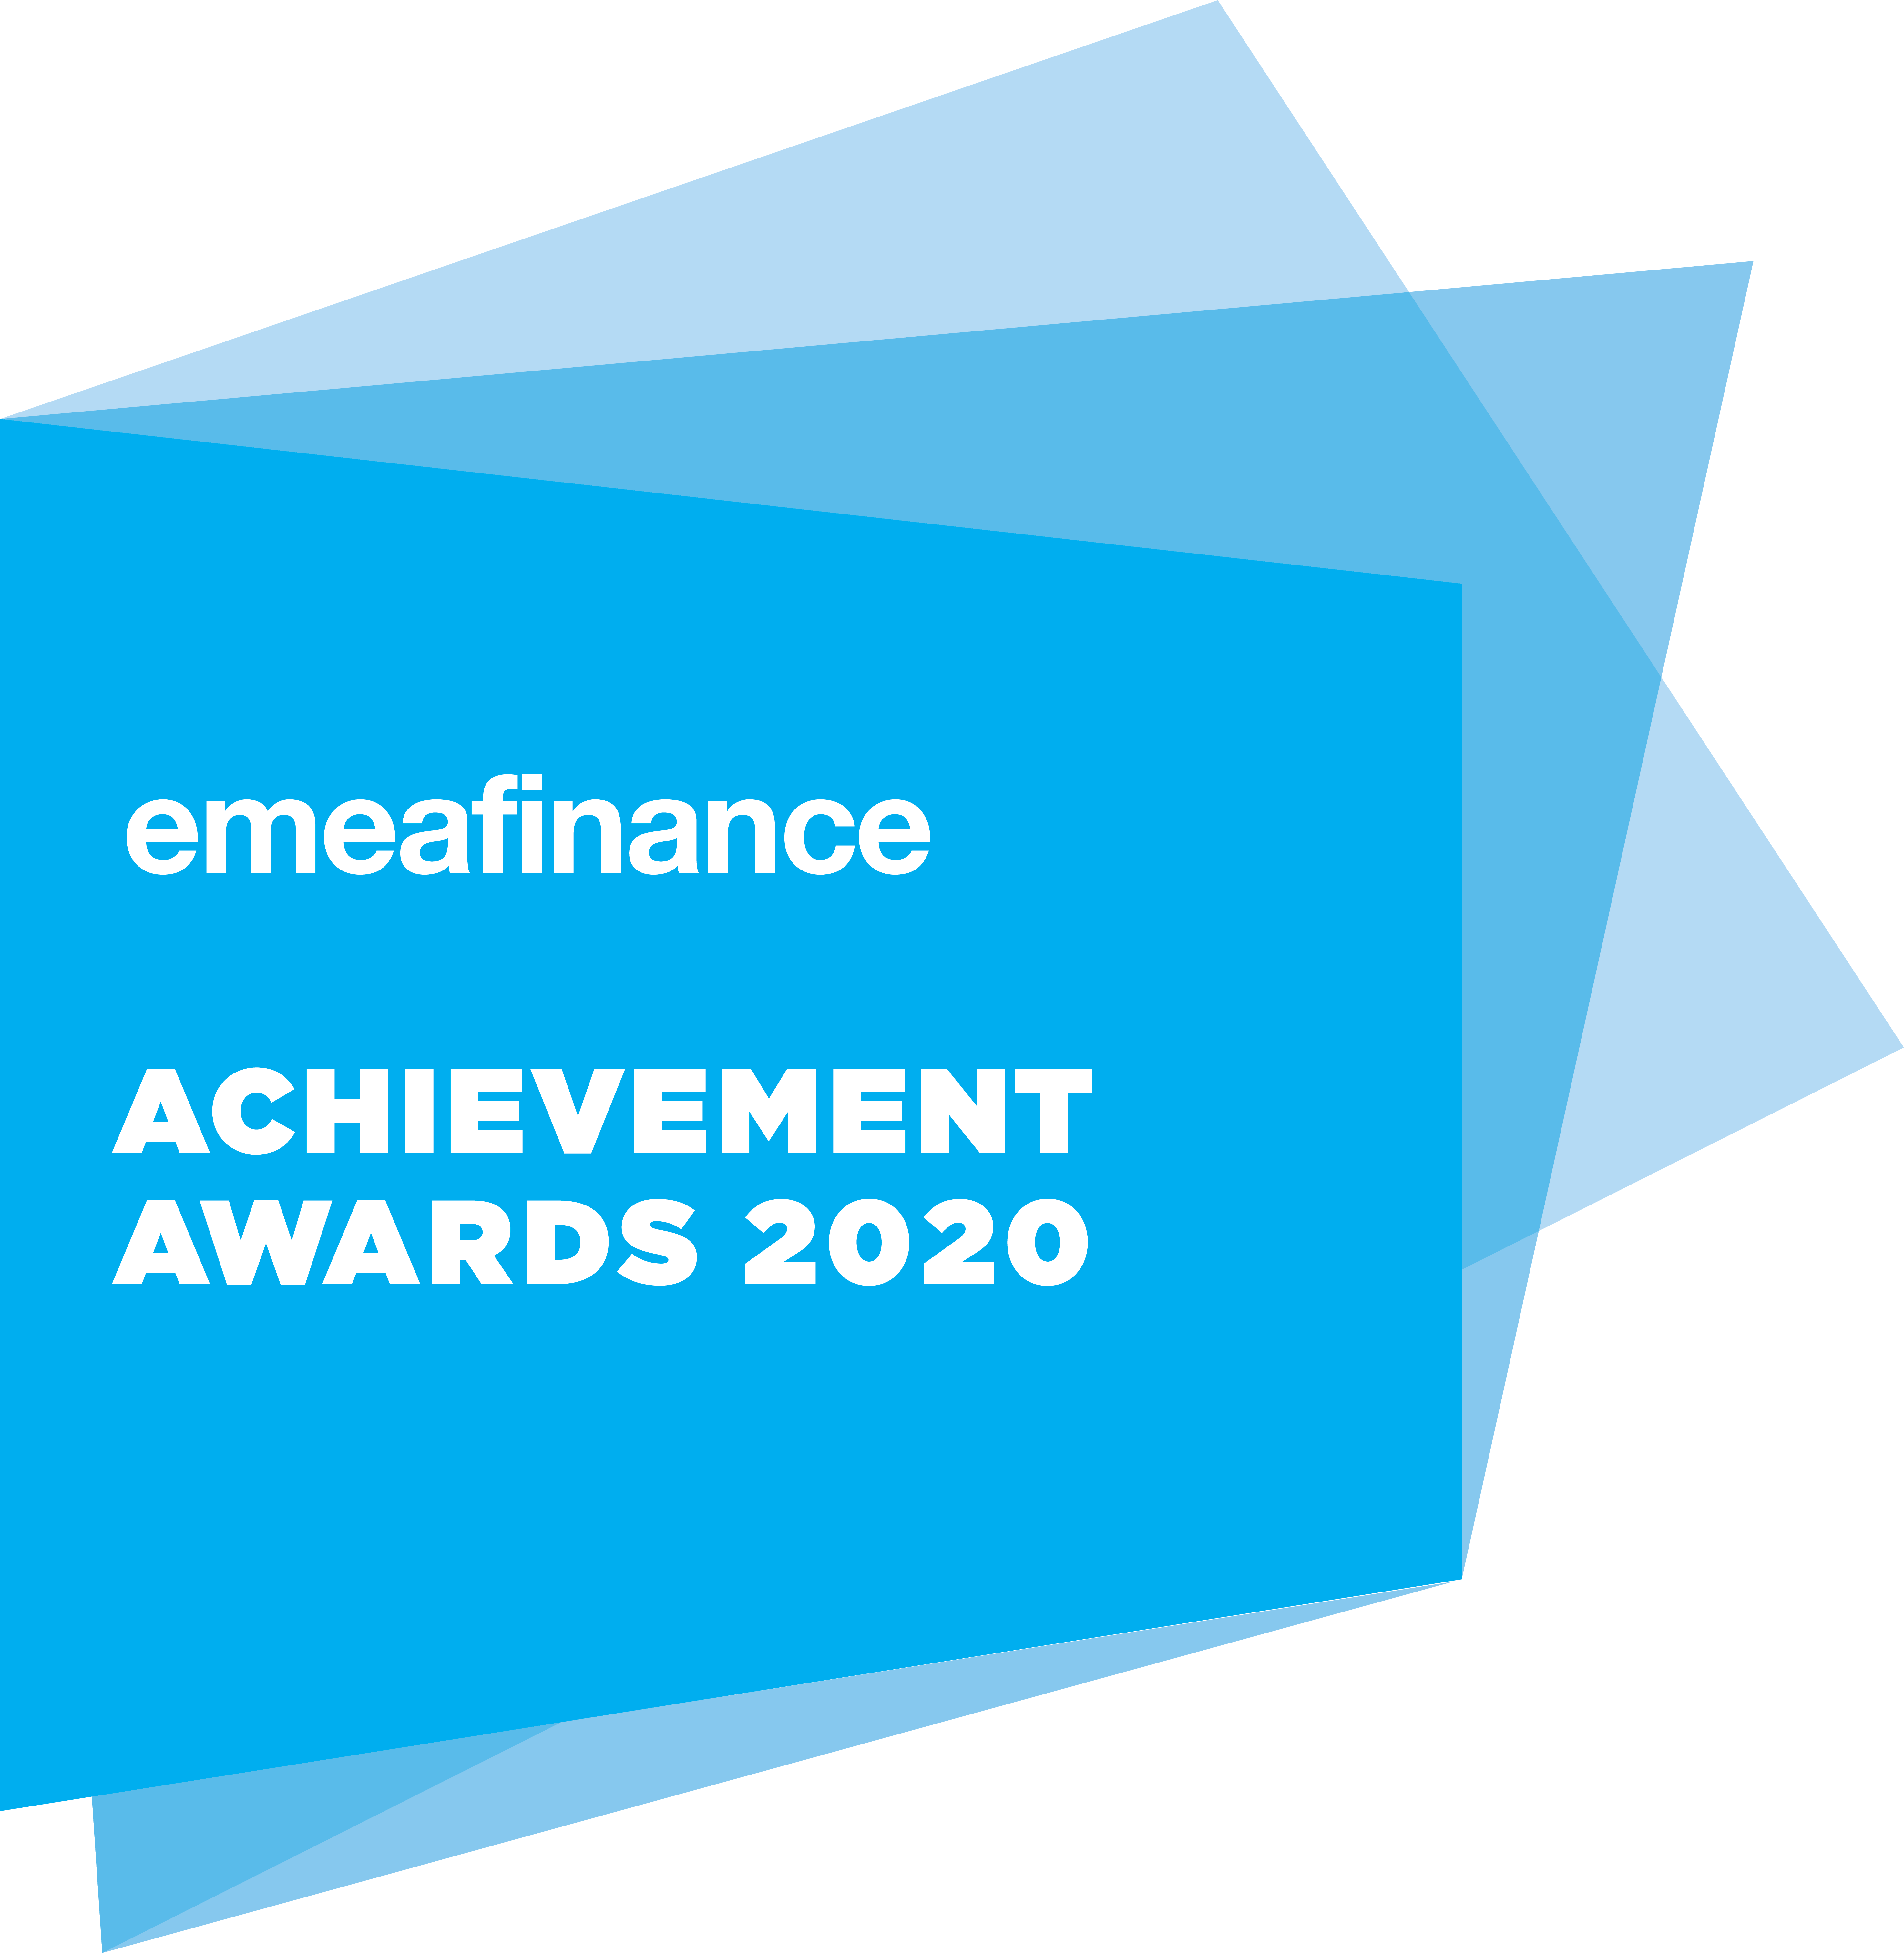 أفضل شركة في مجال استثمارات الملكية الخاصة في أوروبا والشرق الأوسط وإفريقيا جوائز إيميا فاينانس، 2020